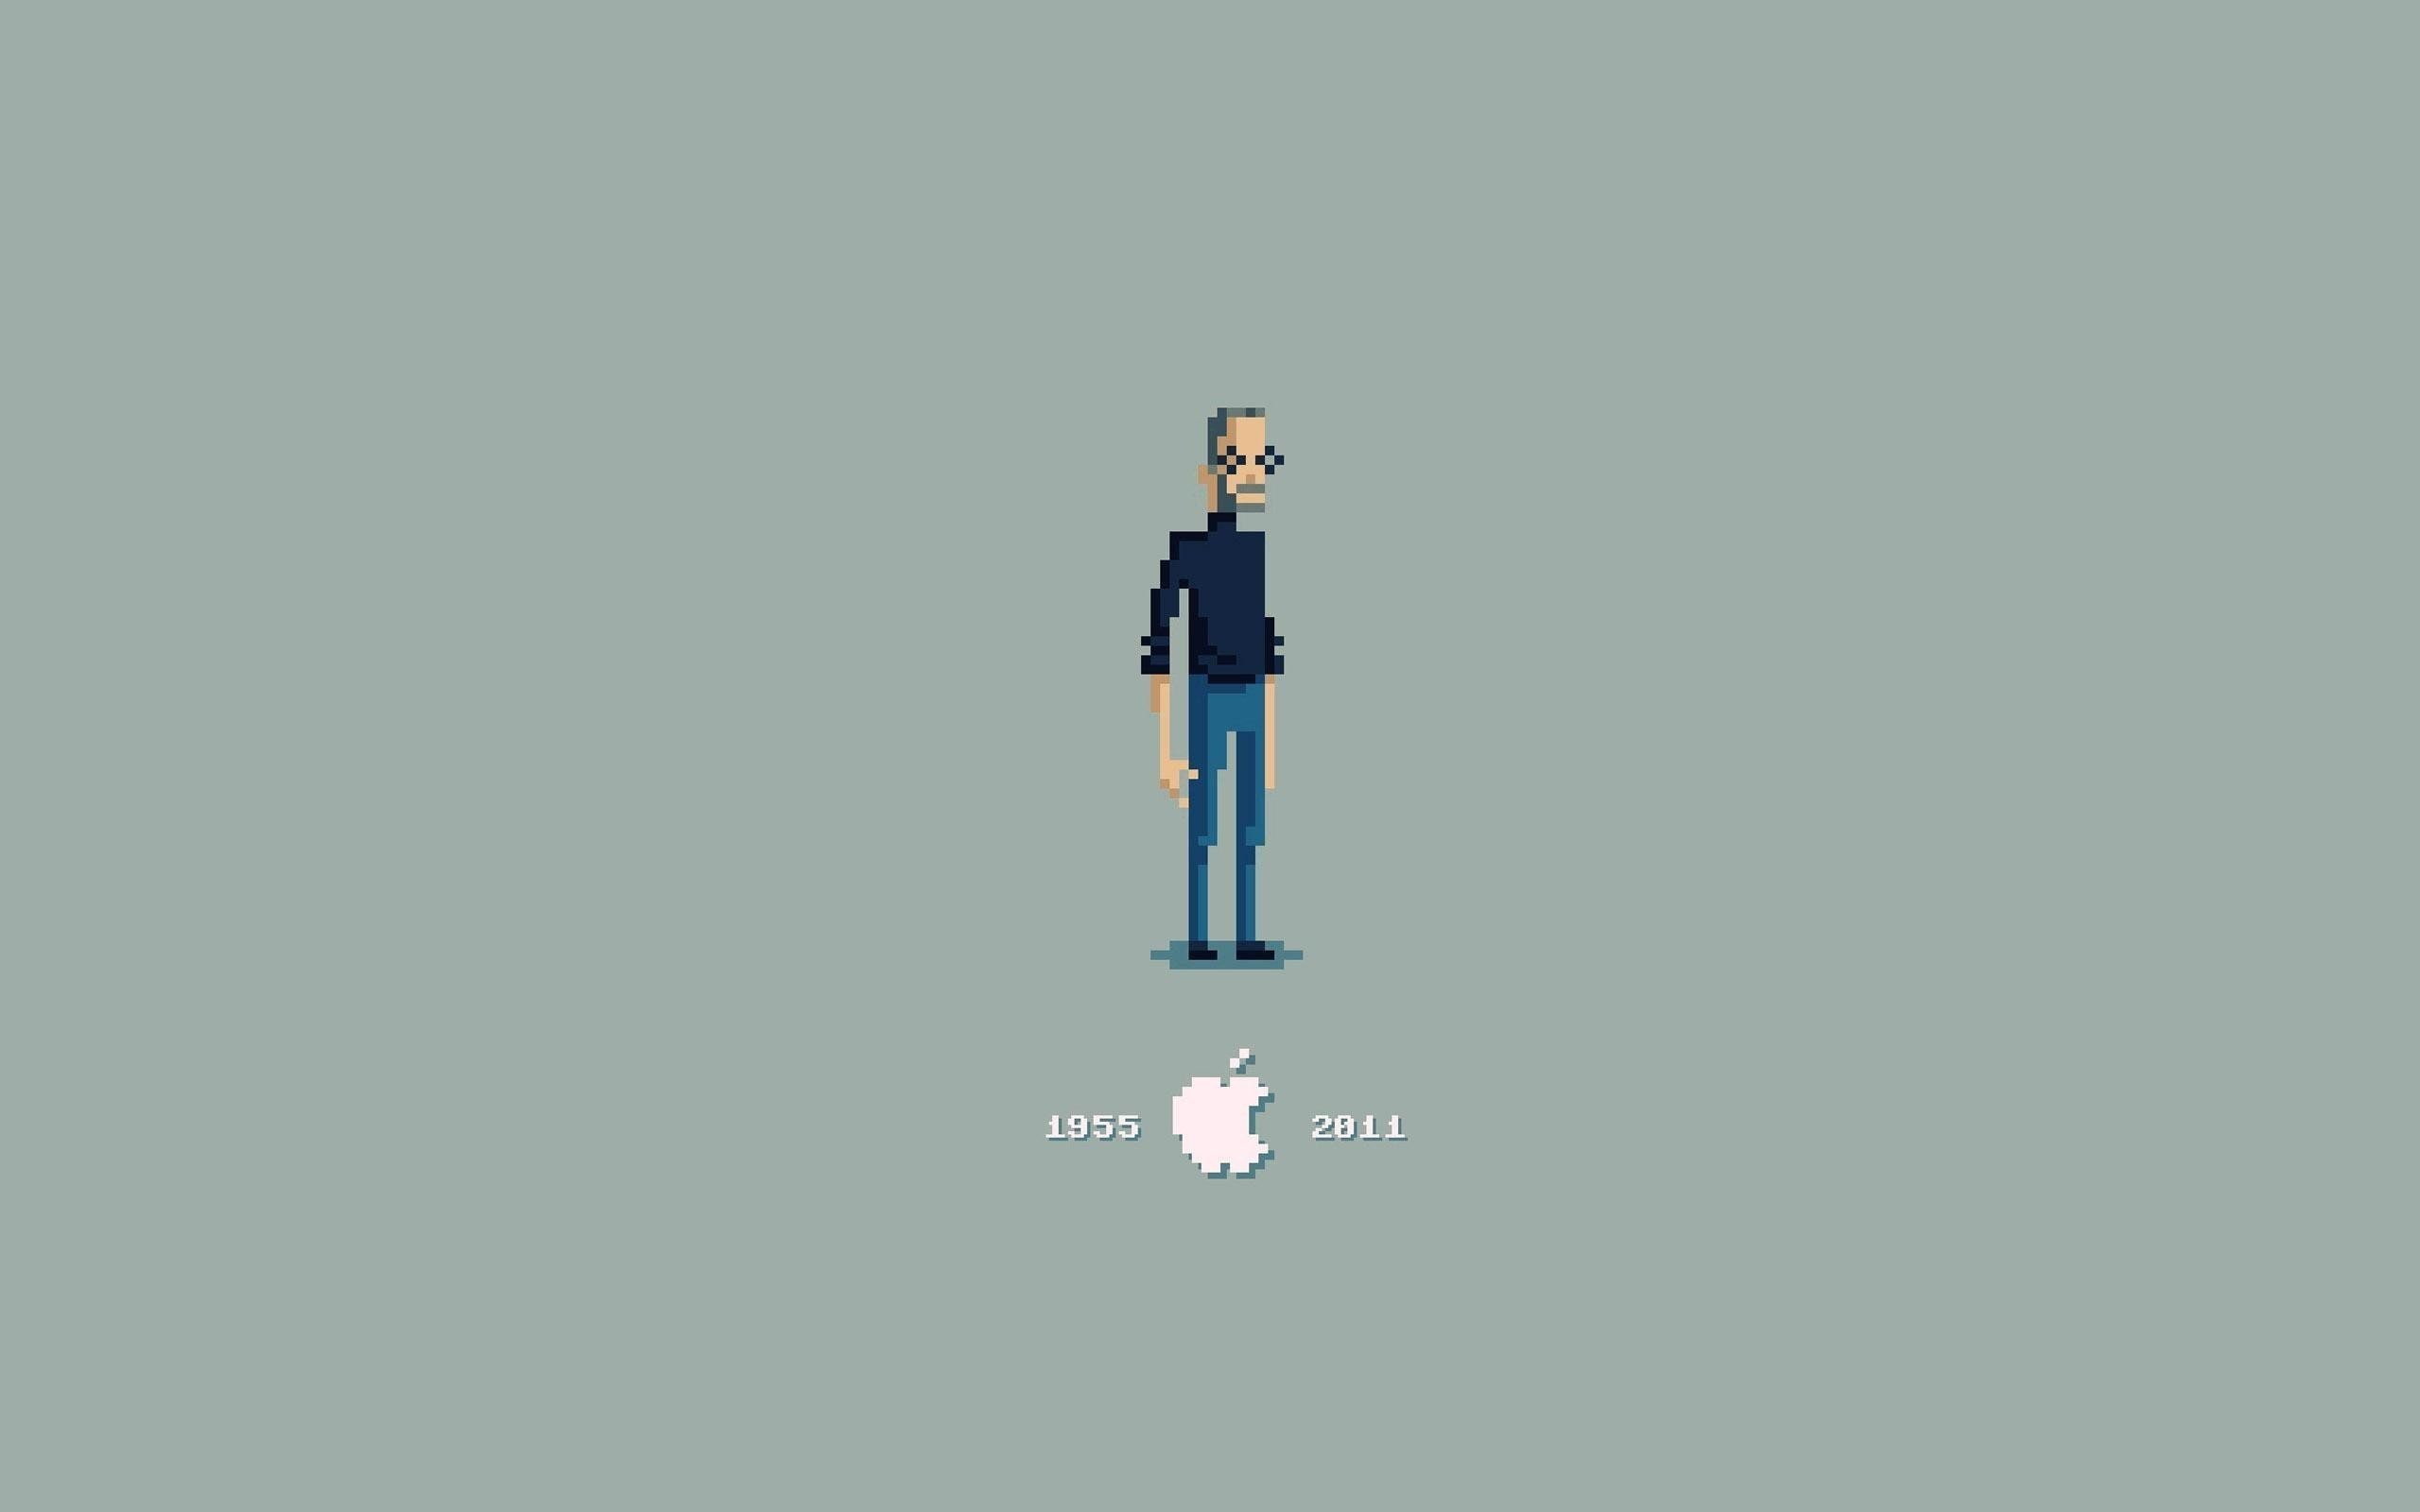 steve jobs apple inc_ pixel art 8 bit minimalism, one person